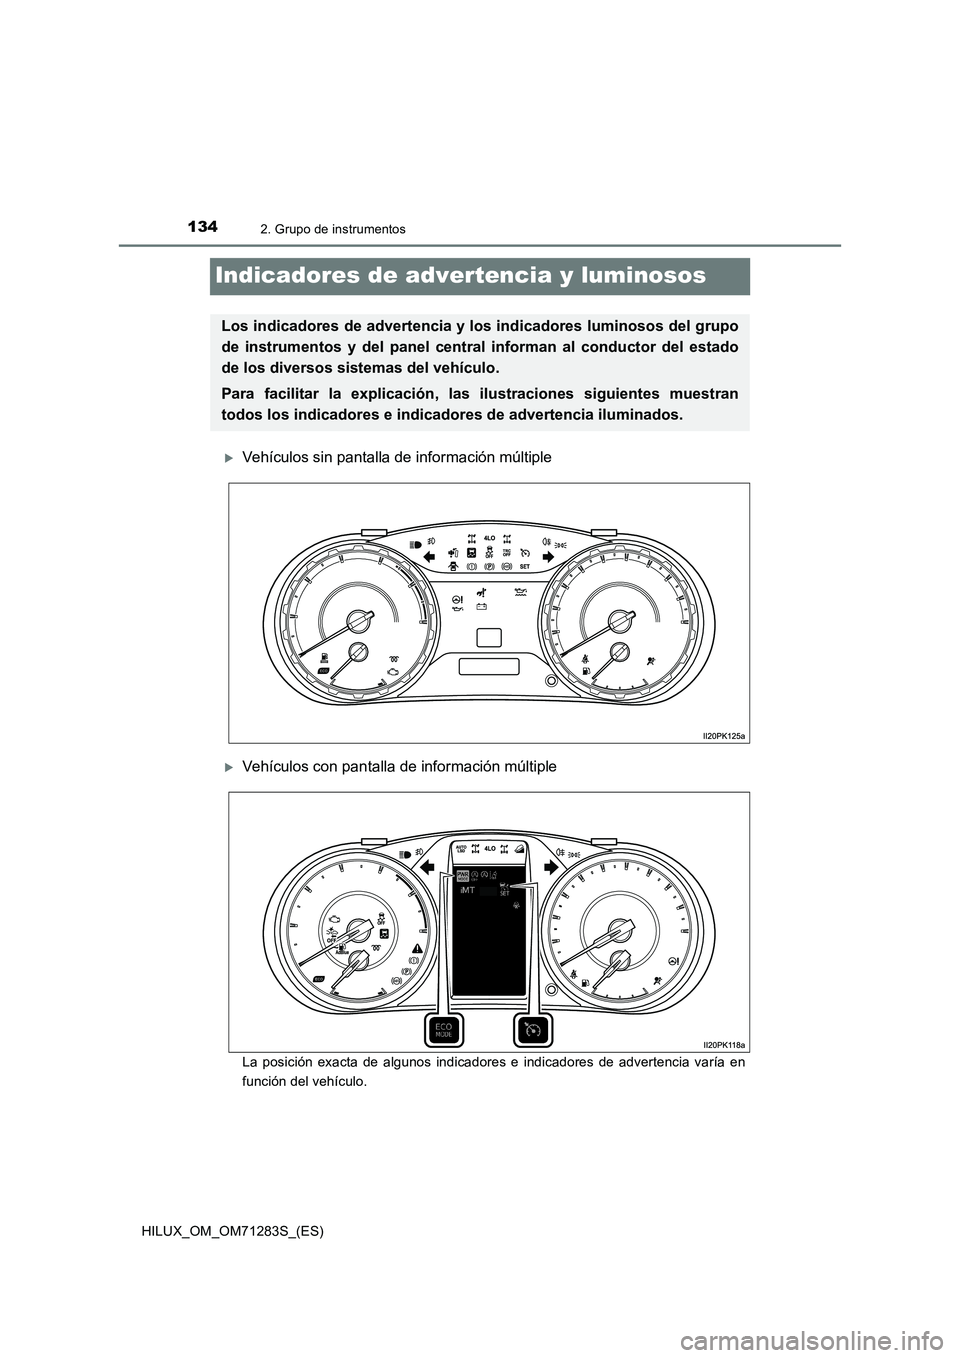 TOYOTA HILUX 2020  Manuale de Empleo (in Spanish) 1342. Grupo de instrumentos
HILUX_OM_OM71283S_(ES)
Indicadores de advertencia y luminosos
Vehículos sin pantalla de información múltiple
Vehículos con pantalla de información múltiple
La p